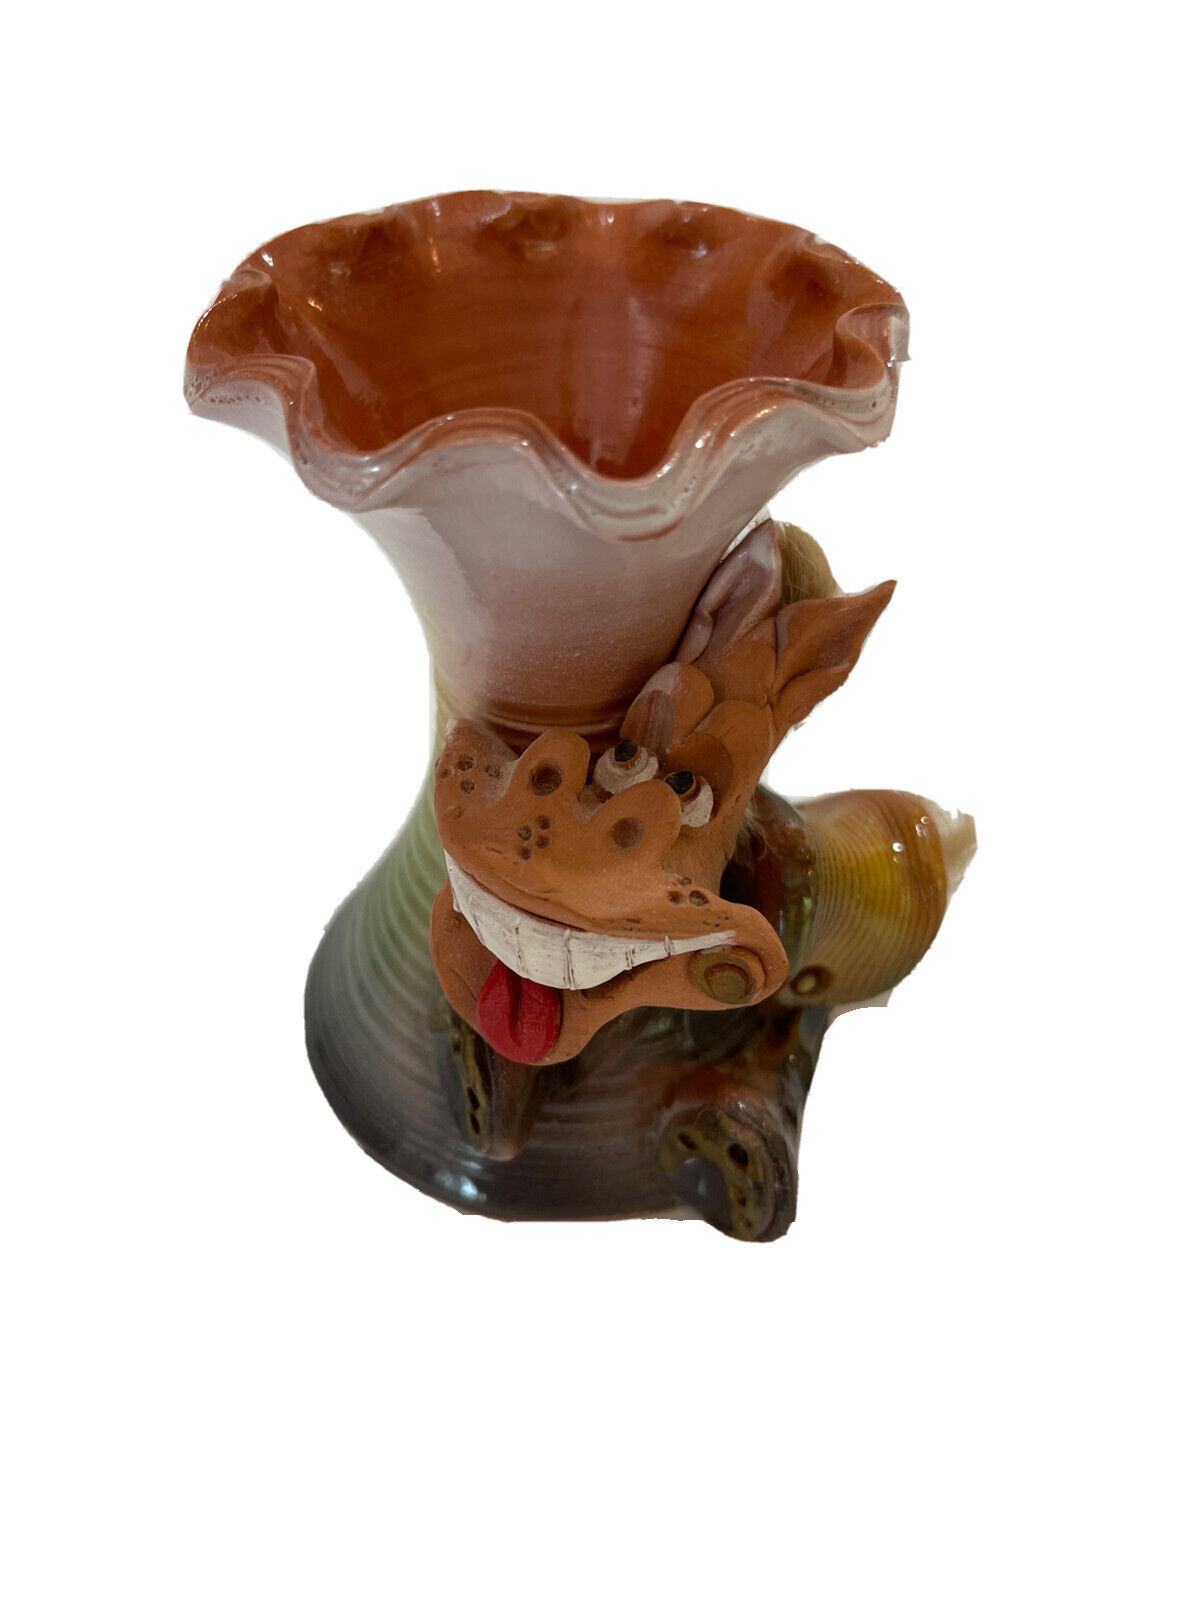 Art Pottery Laughing Donkey Ruffled Vase Toothpick Holder Whimsical Southwestern